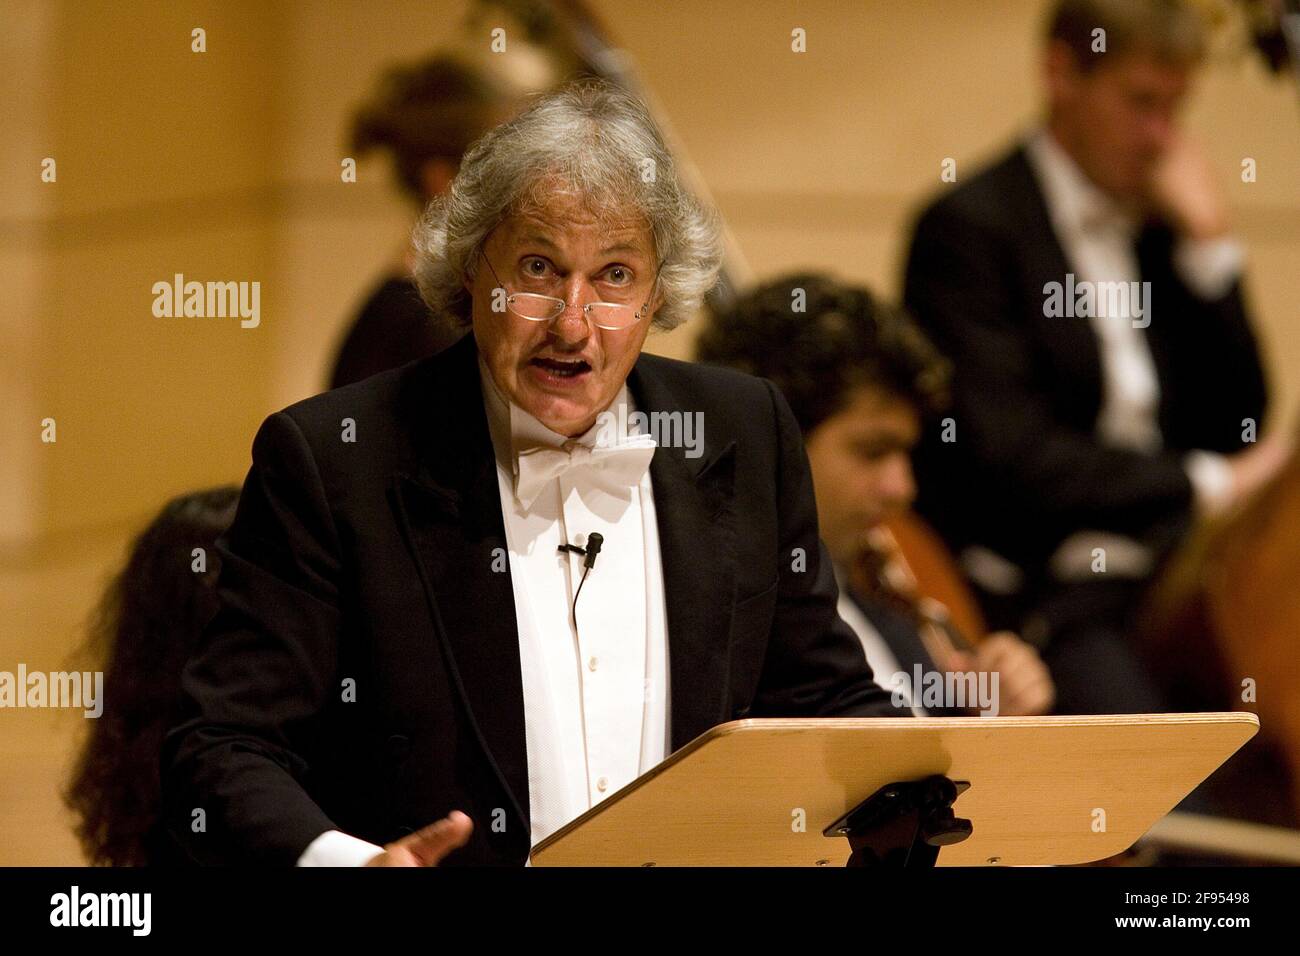 DEU, Deutschland, Ruhrgebiet, Essen, 14.09.2006: Konrad Beikircher als Moderator bei einem Operettenkonzert in der Essener Philharmonie. [(c) Michael Stock Photo